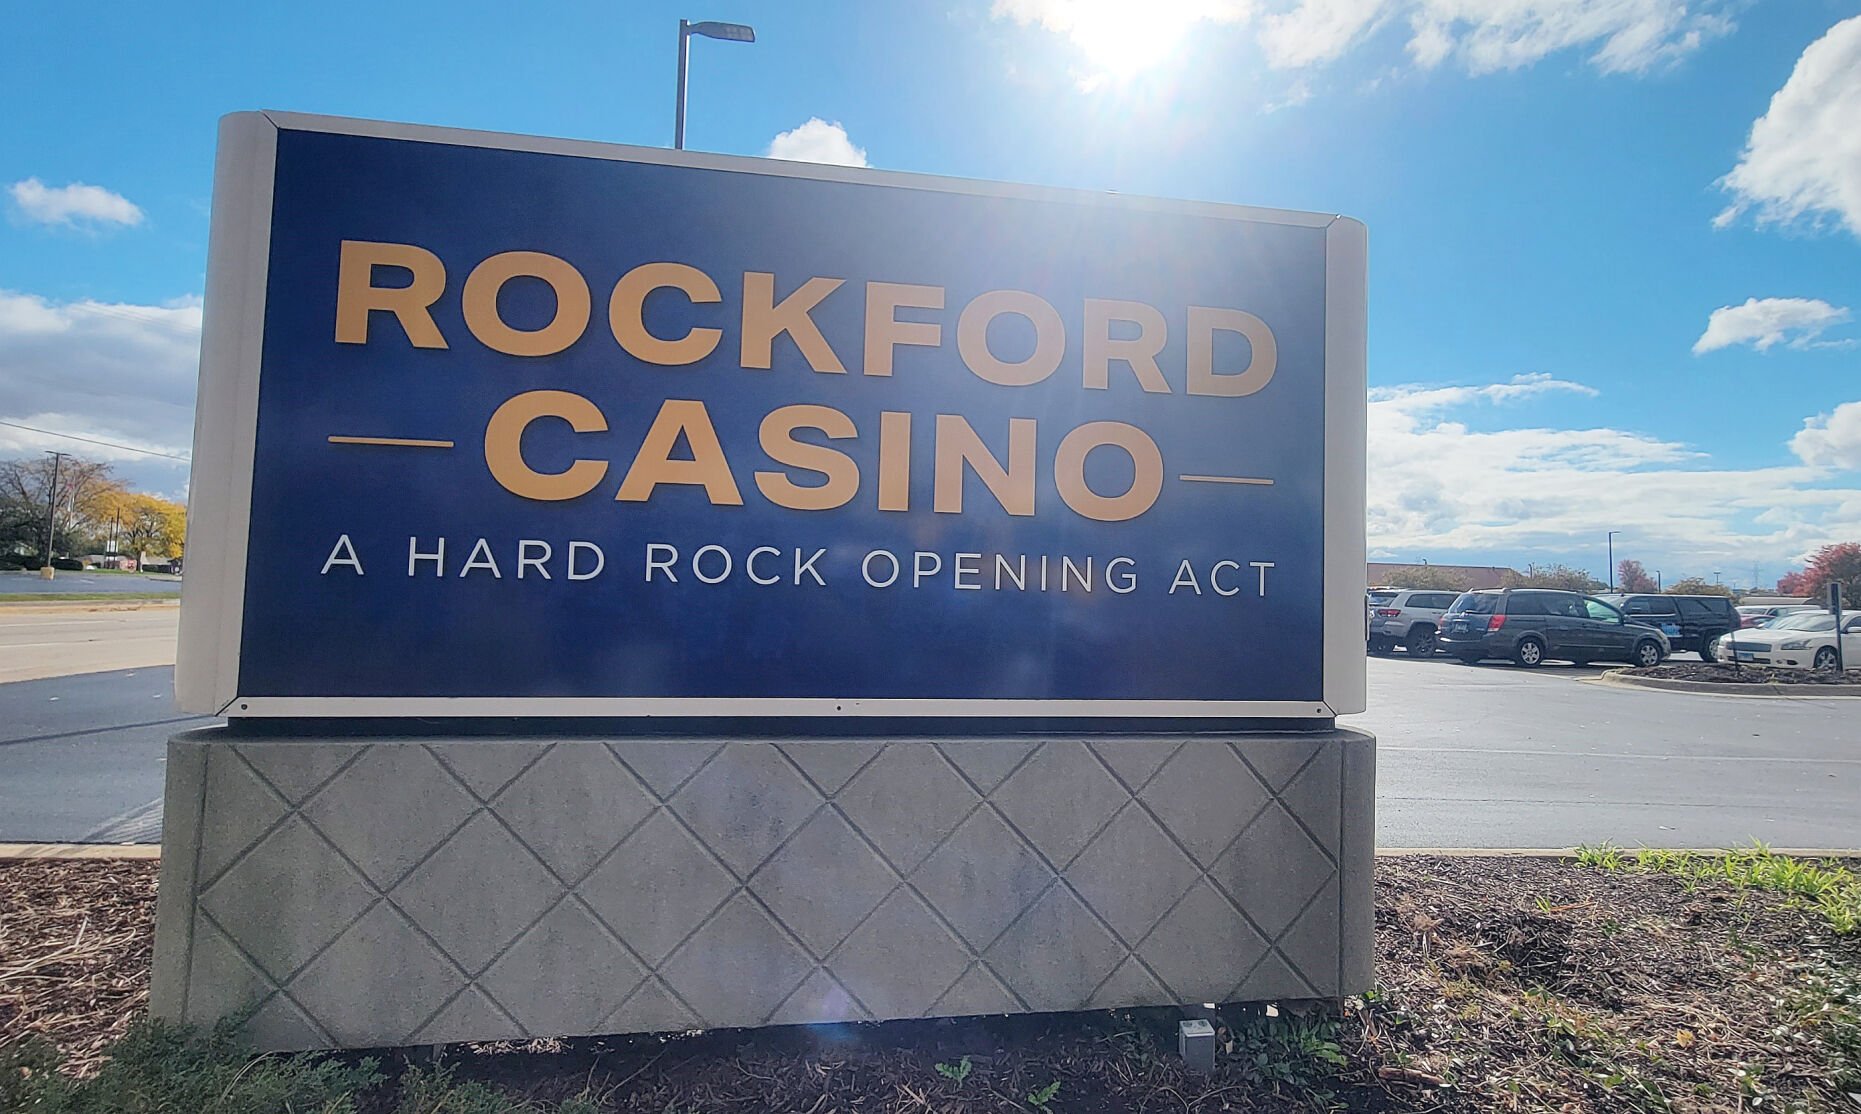 hard rock casino rockford job fair